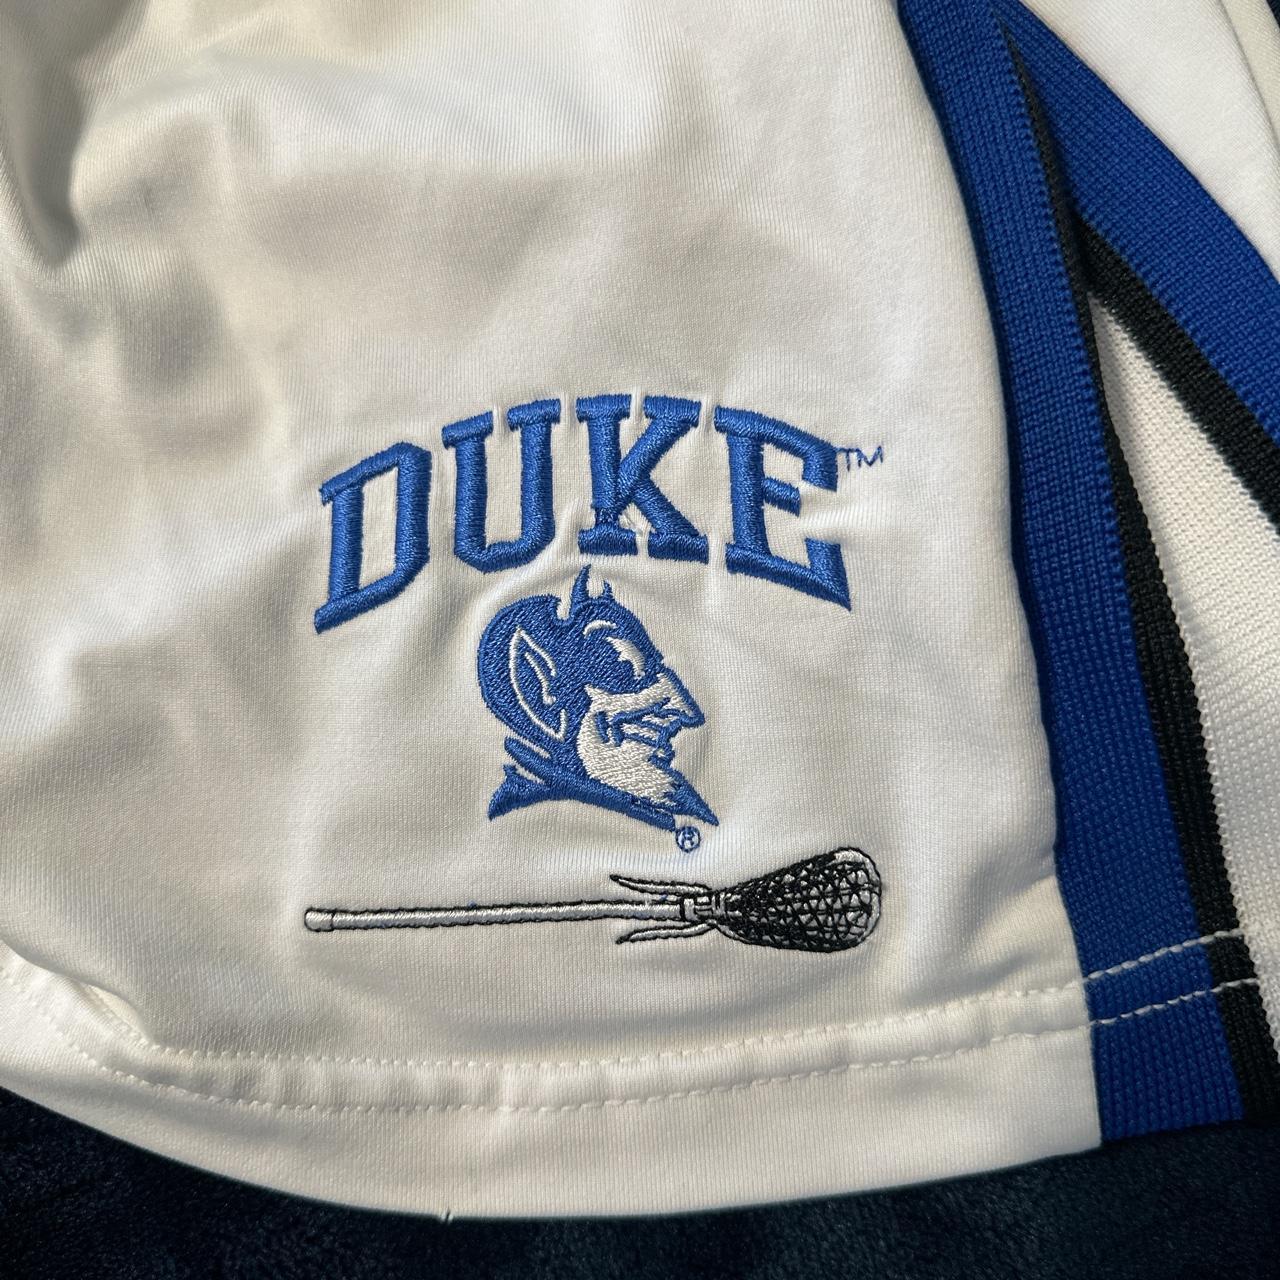 Duke Men's White and Blue Shorts (3)